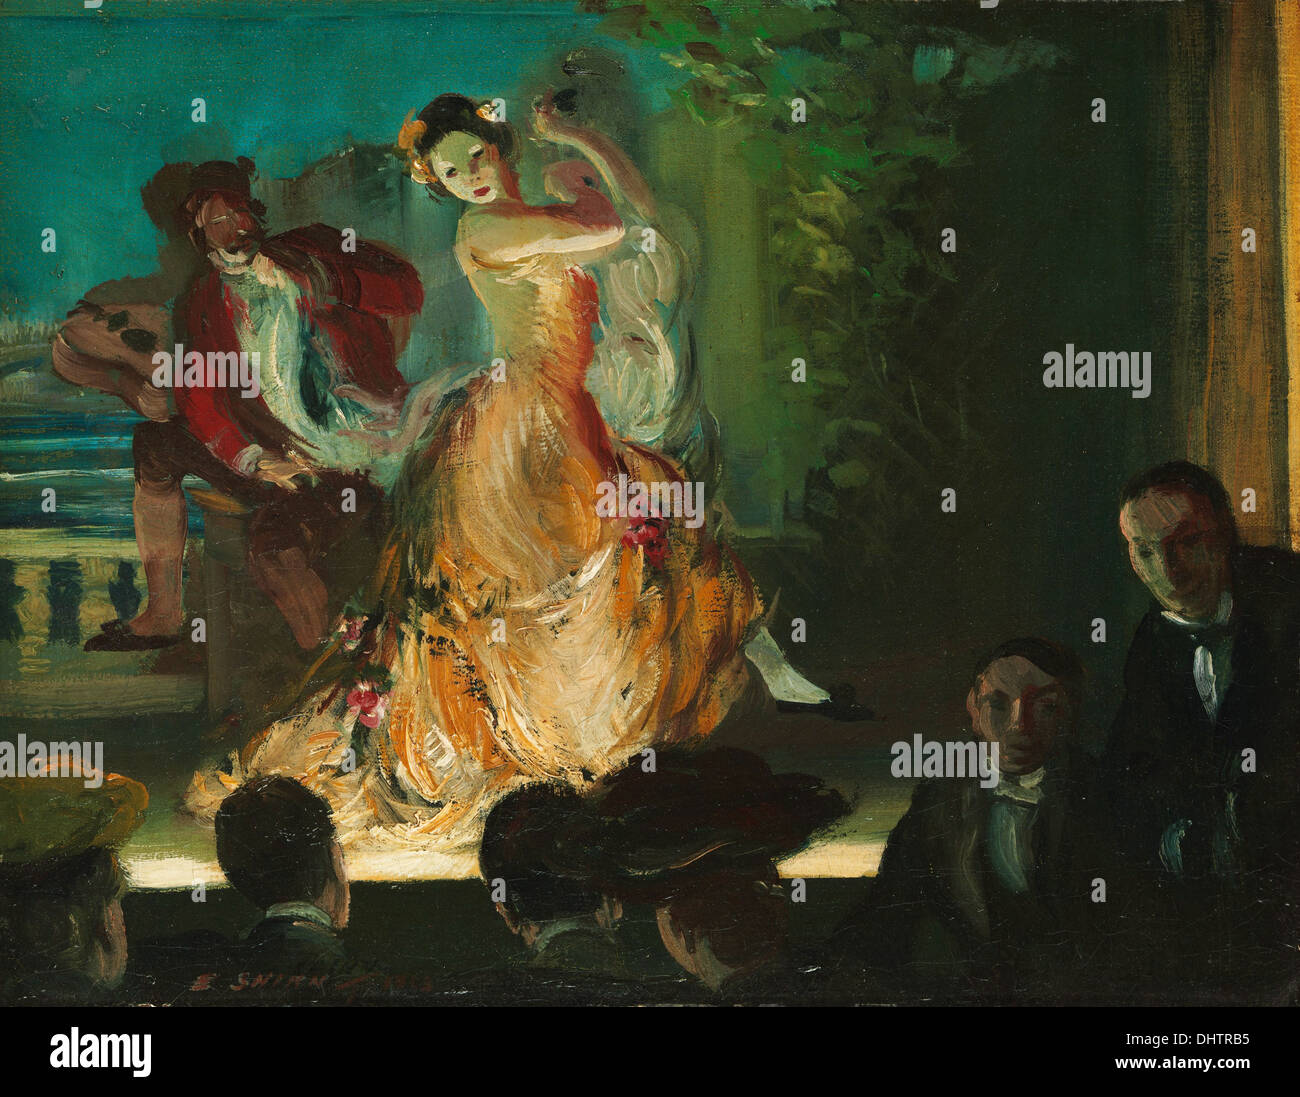 Pintura hispano flamenca fotografías e imágenes de alta resolución - Alamy